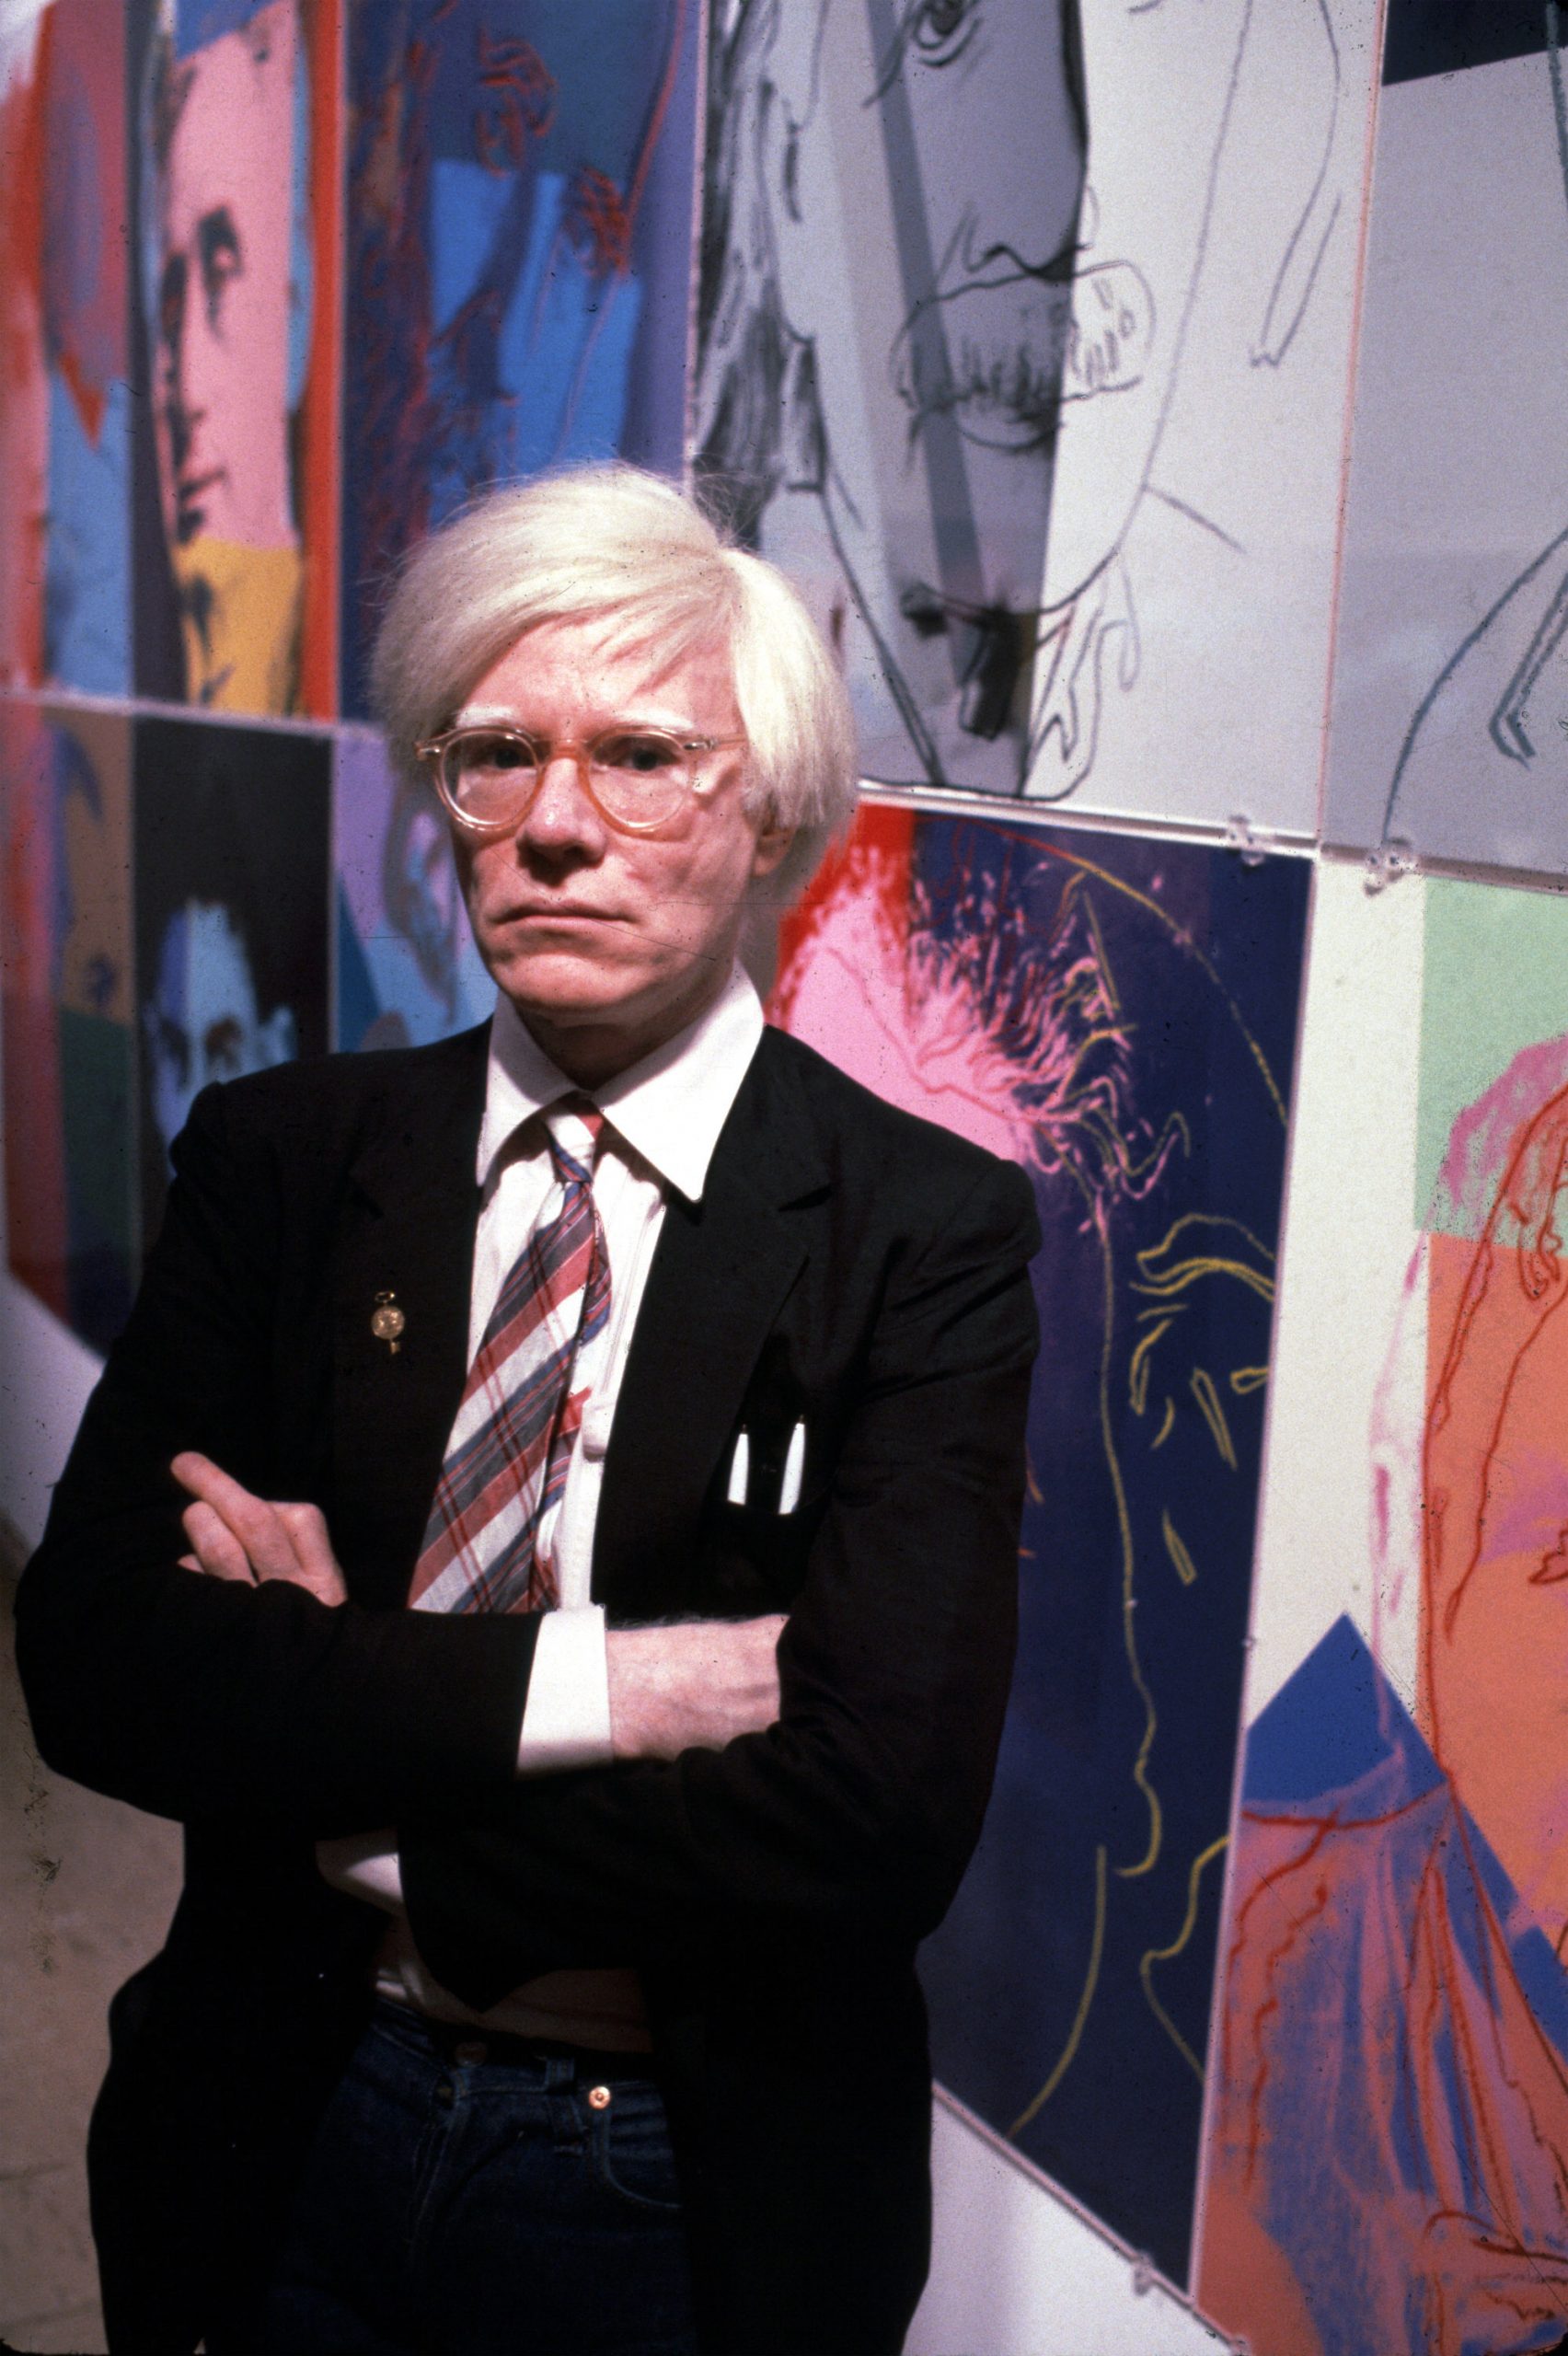 El artista Andy Warhol